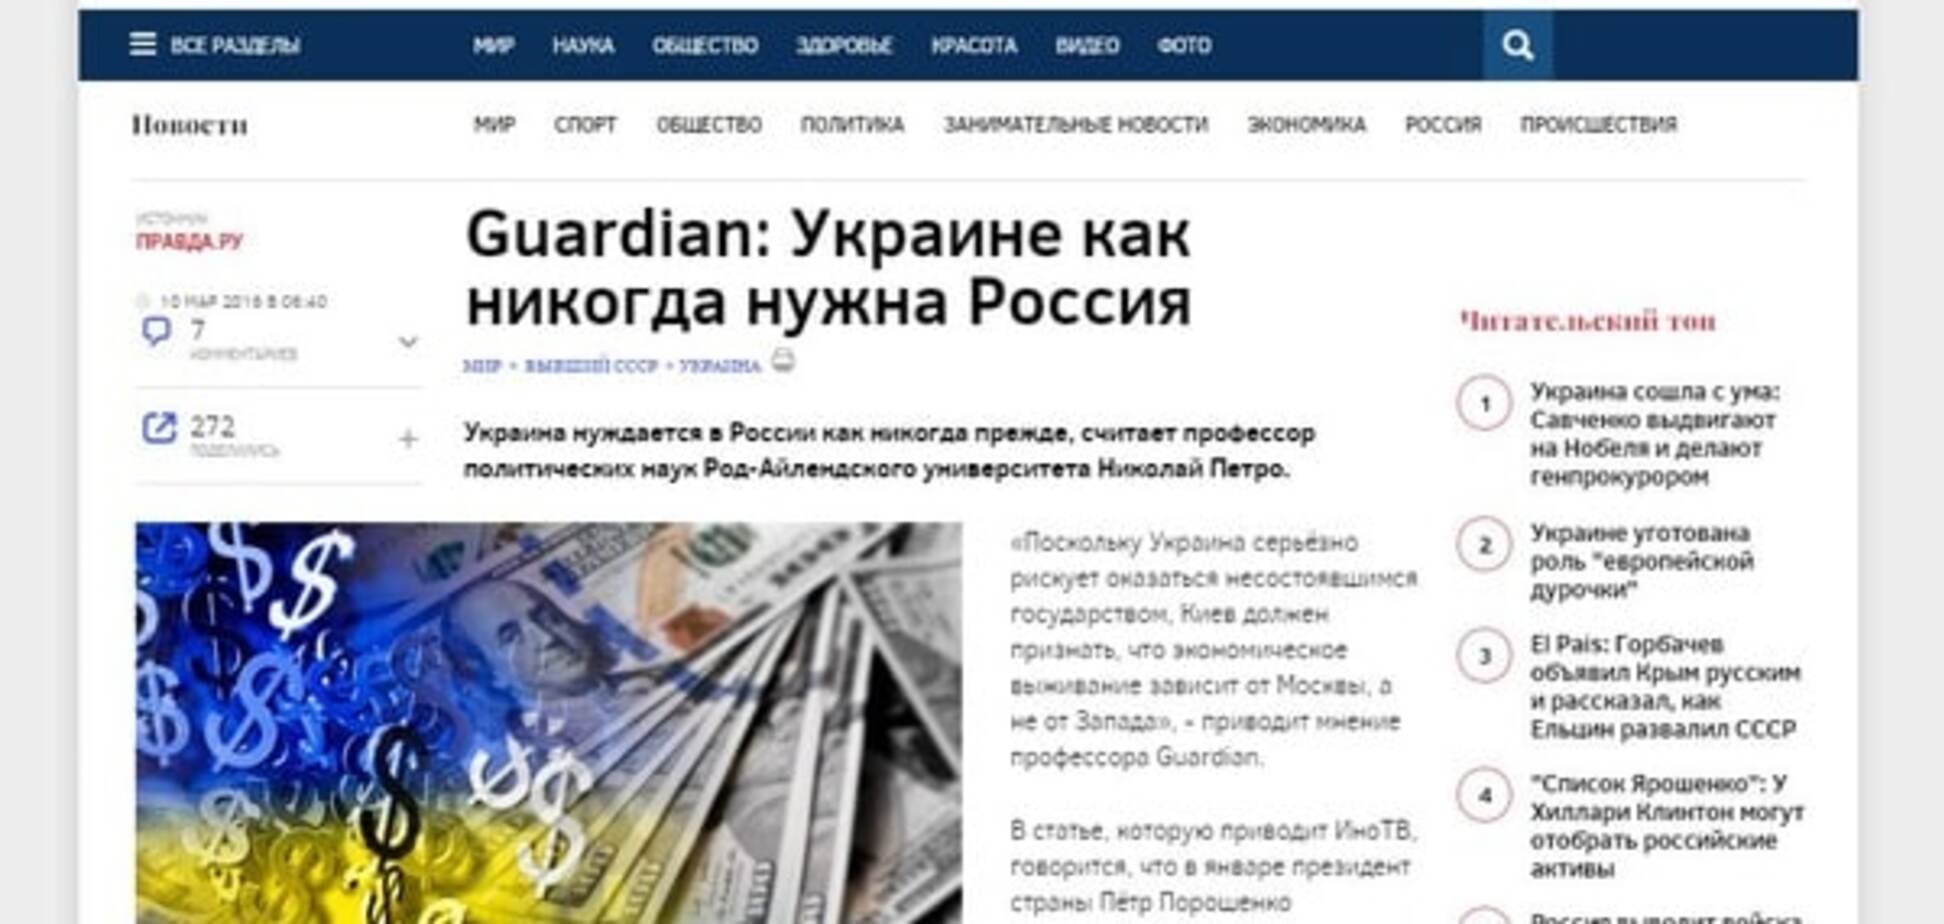 Кремлевская пропаганда: The Guardian опубликовала фальшивку об Украине